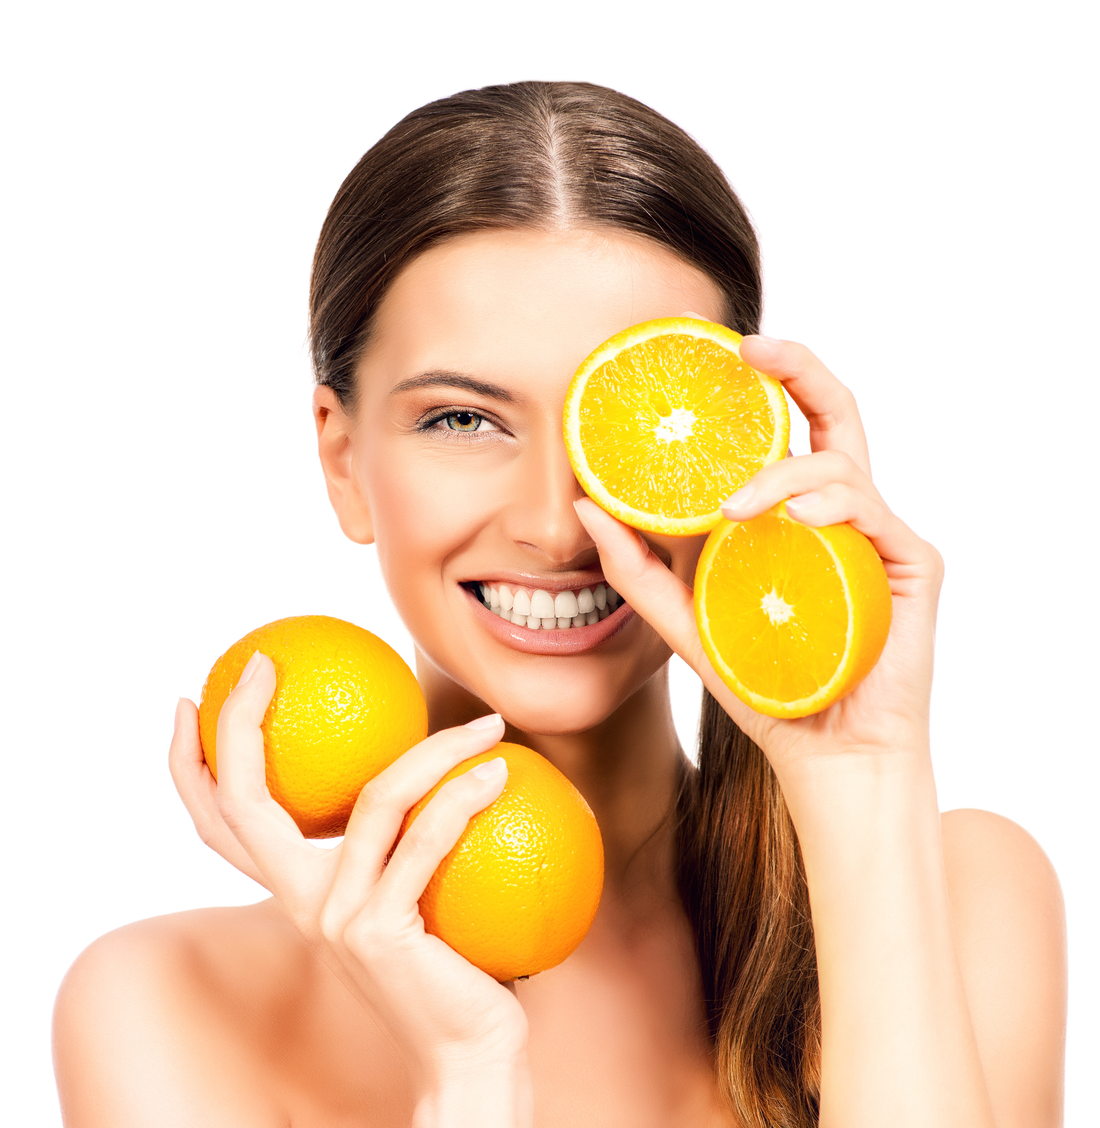 Enkele interessante weetjes over Vitamine C